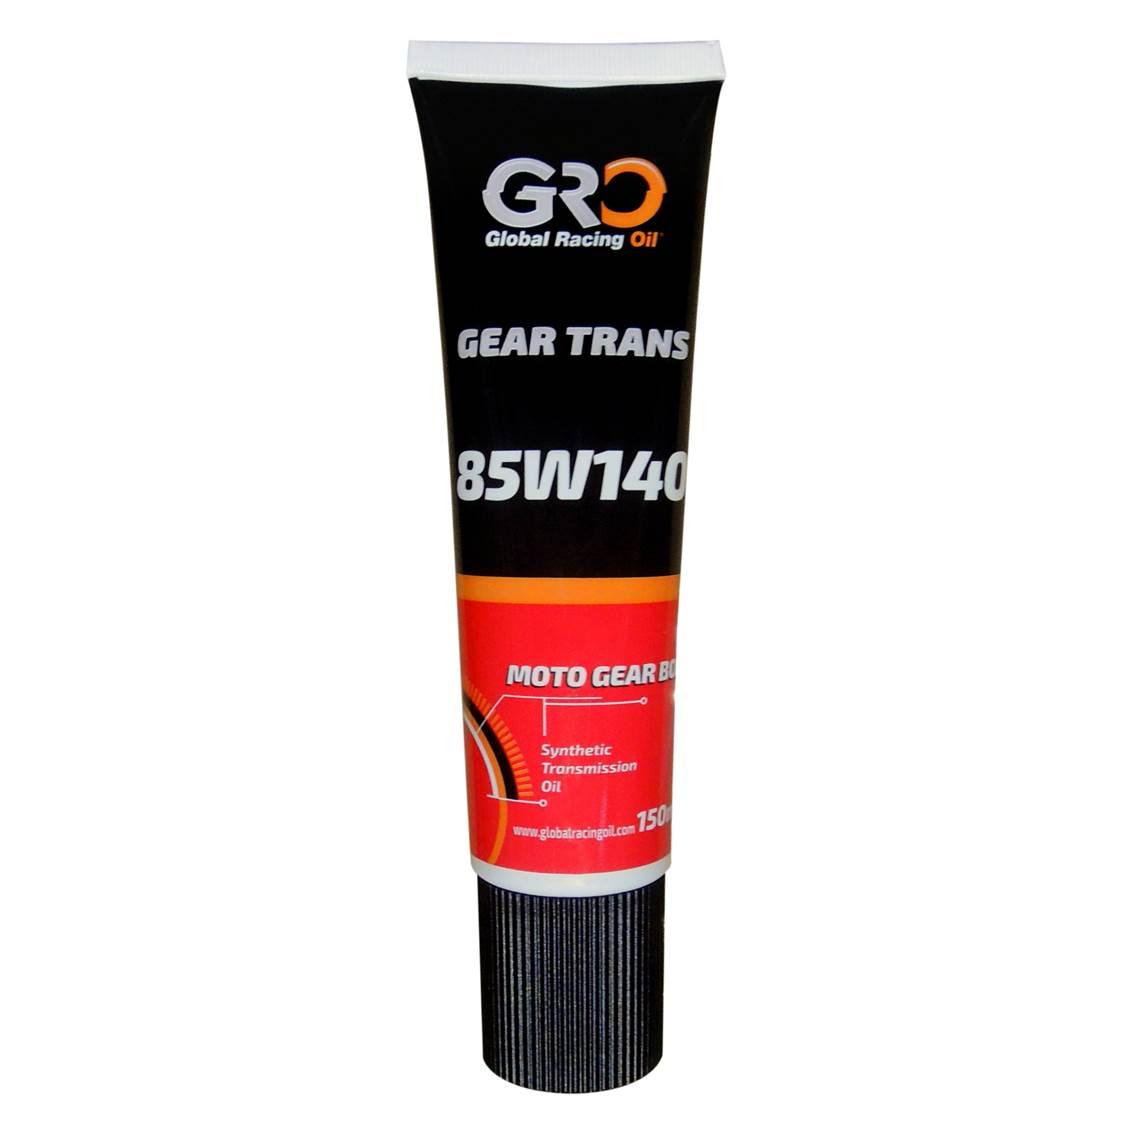 GRO GEAR TRANS 85W140 合成齒輪油